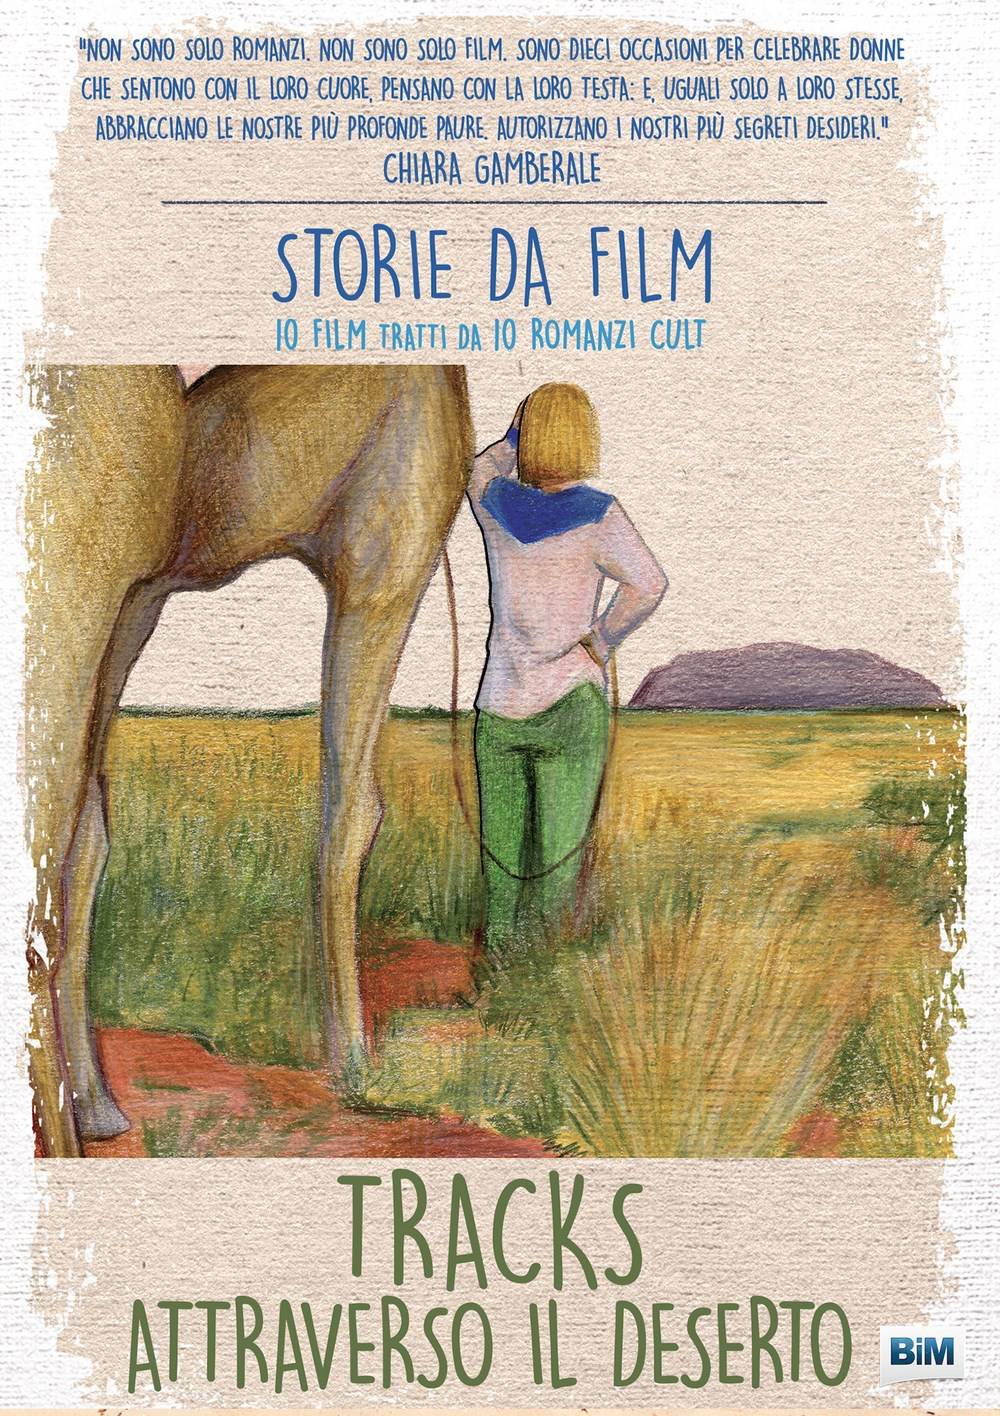 FRONT_STORIE FILM_tracks